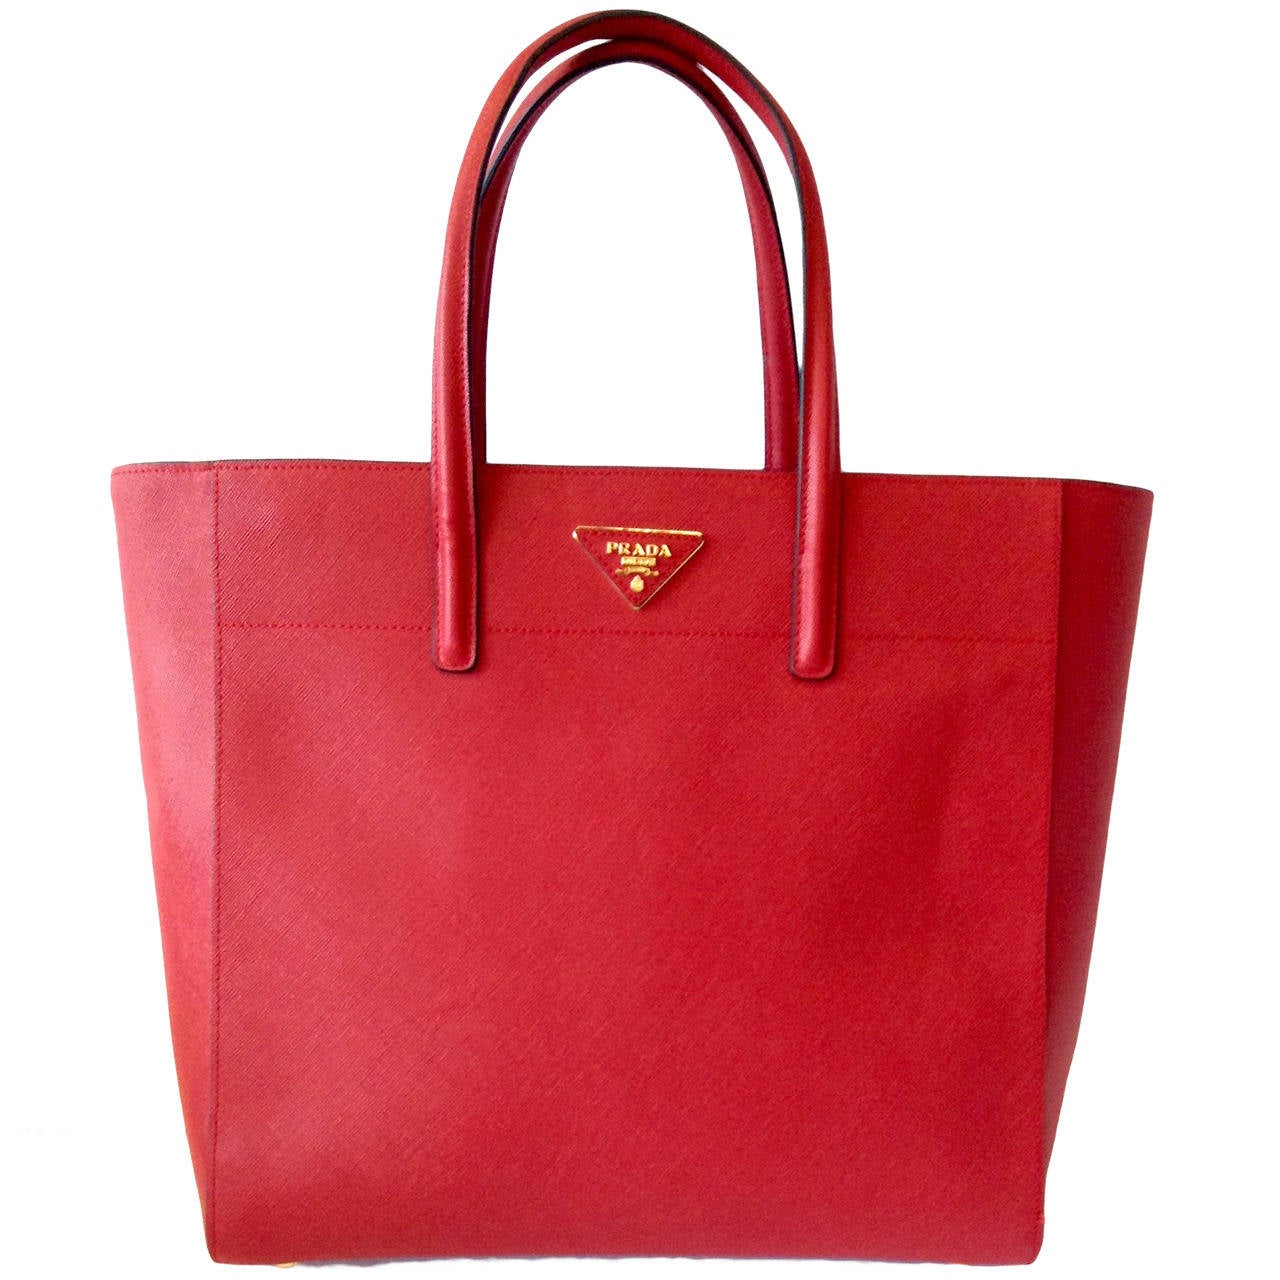 2013 PRADA Saffiano Trapeze tote bag in Lipstick Red GHW $1800 For Sale